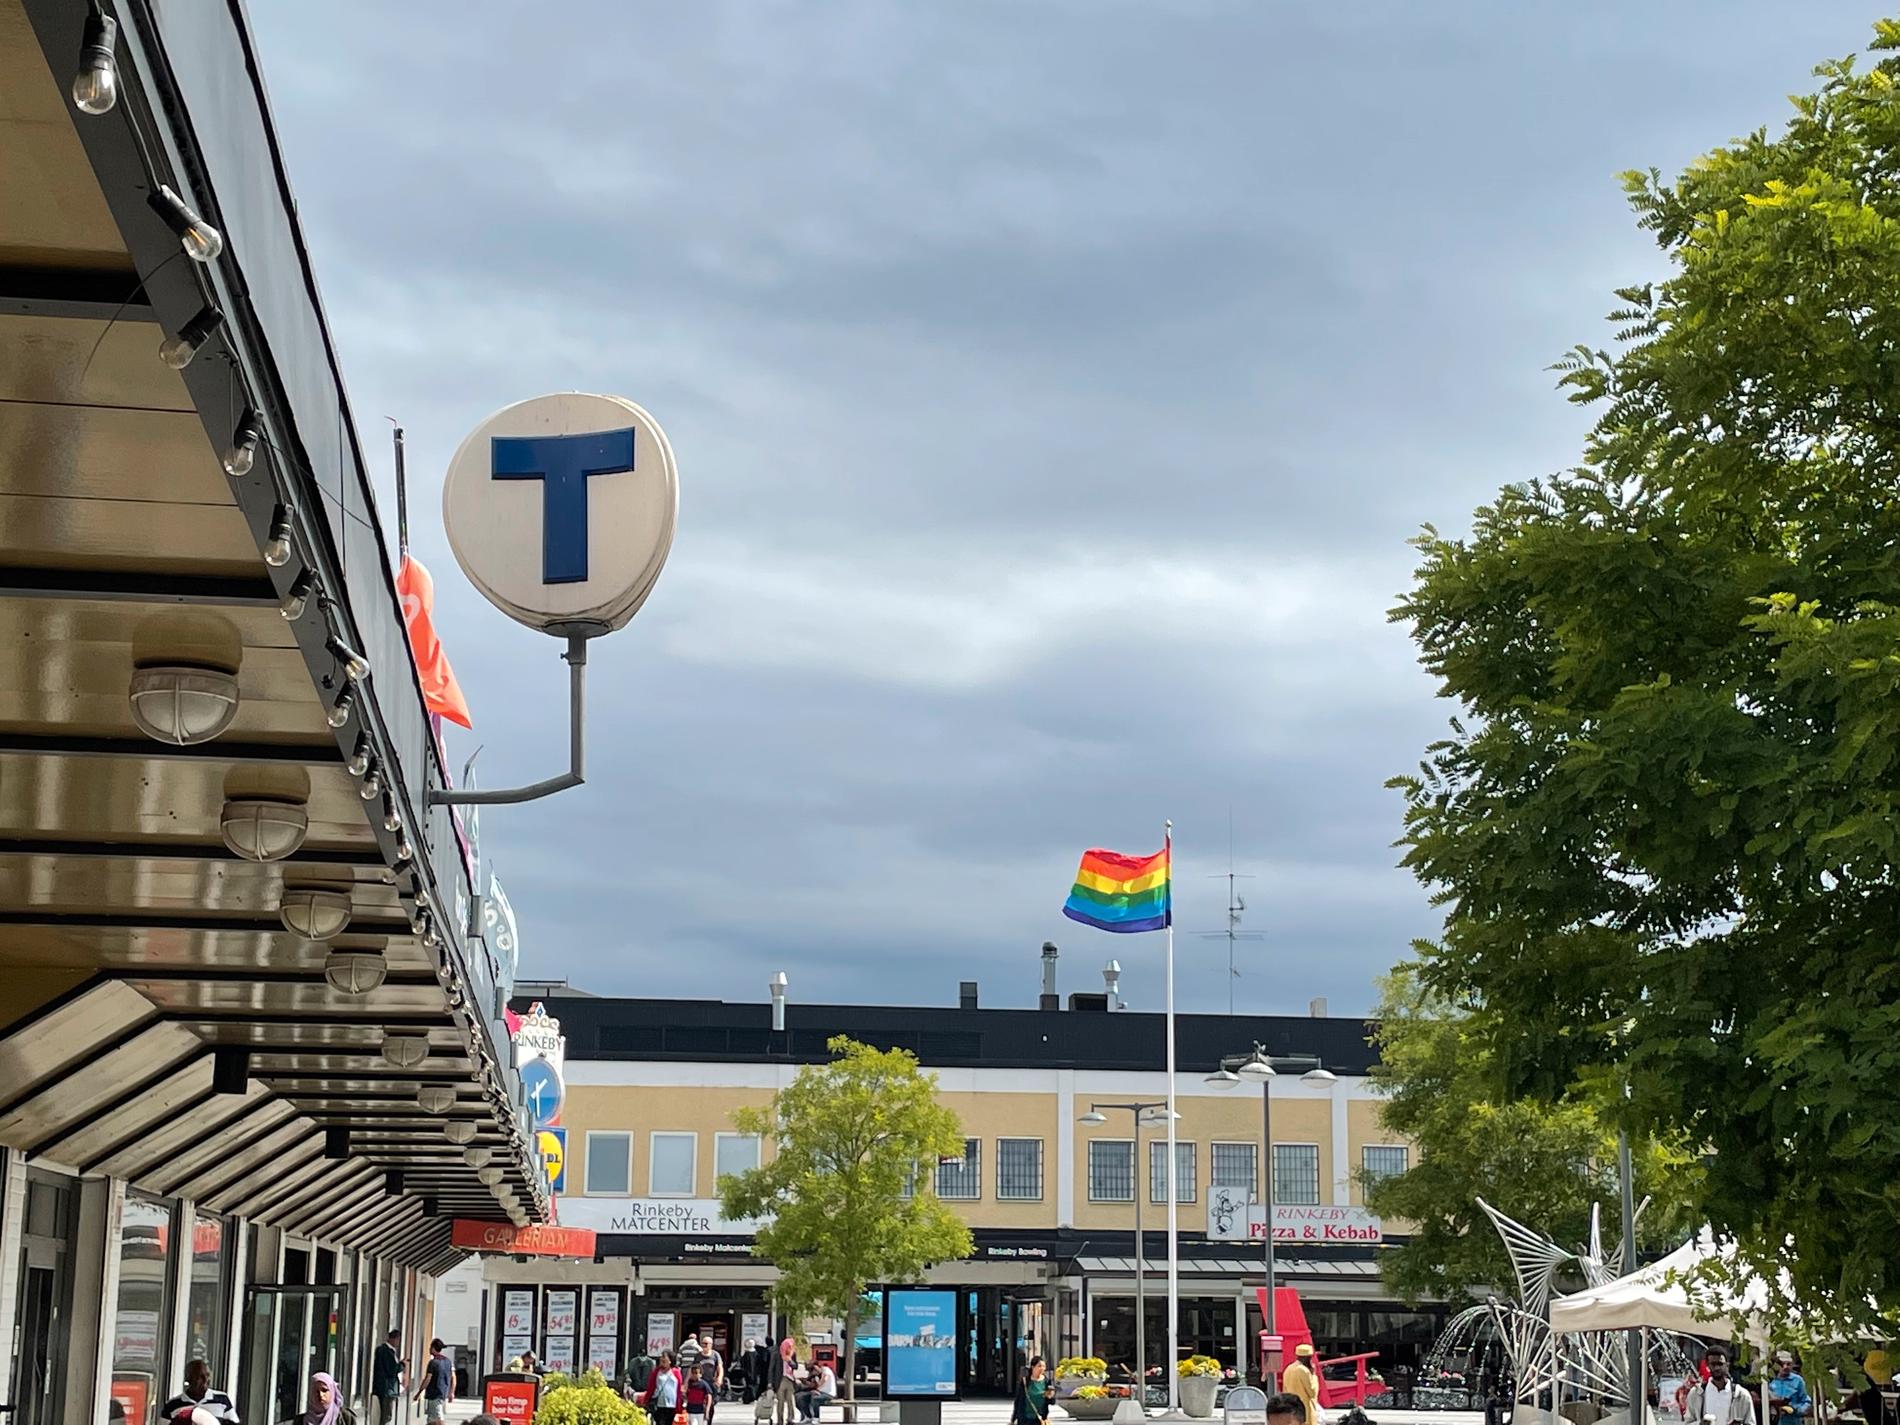 På Rinkeby torg denna augustidag syns inga spår av några gängbrott.